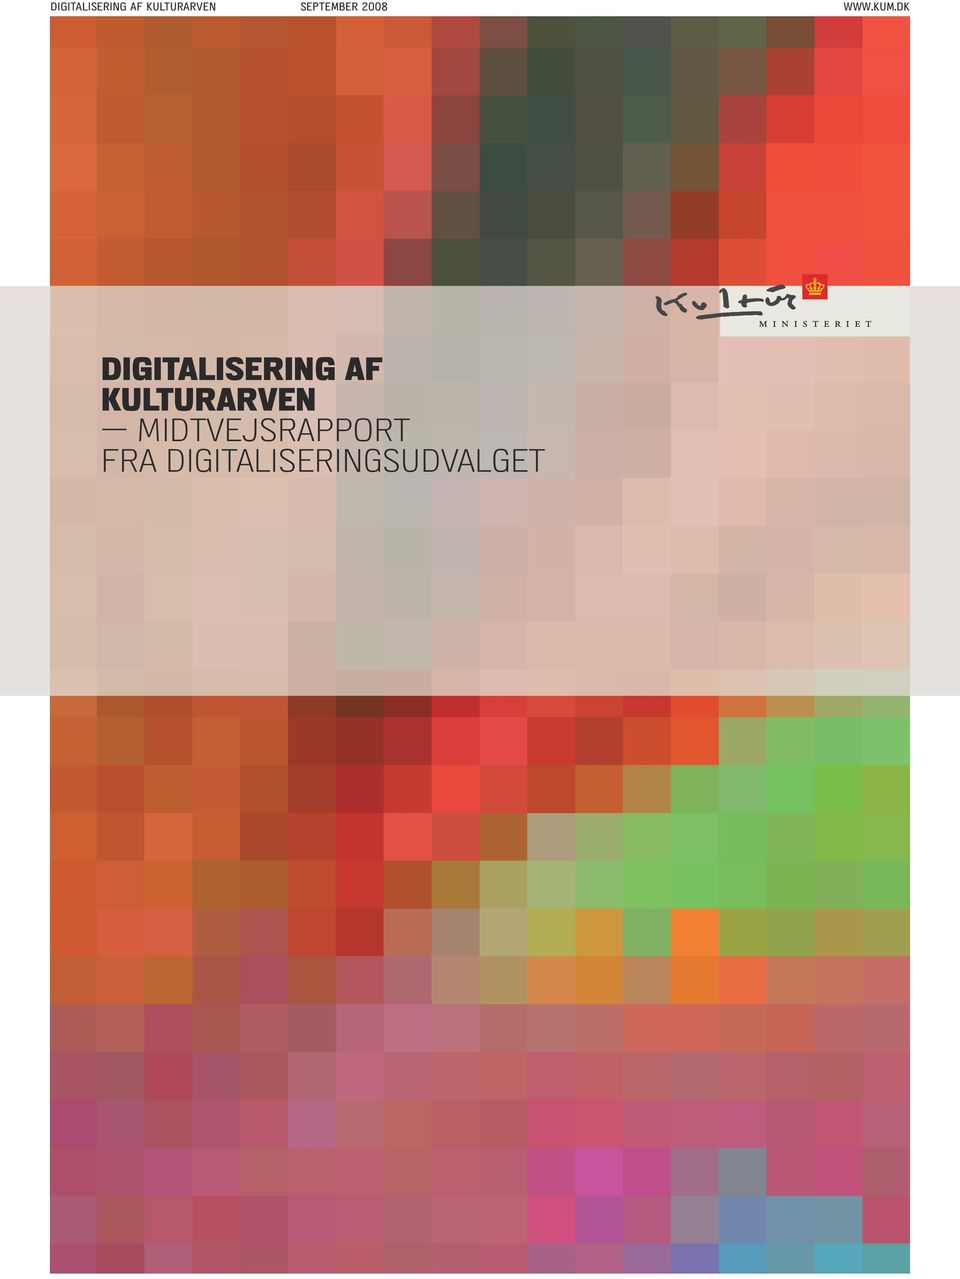 DK digitalisering af kulturarven